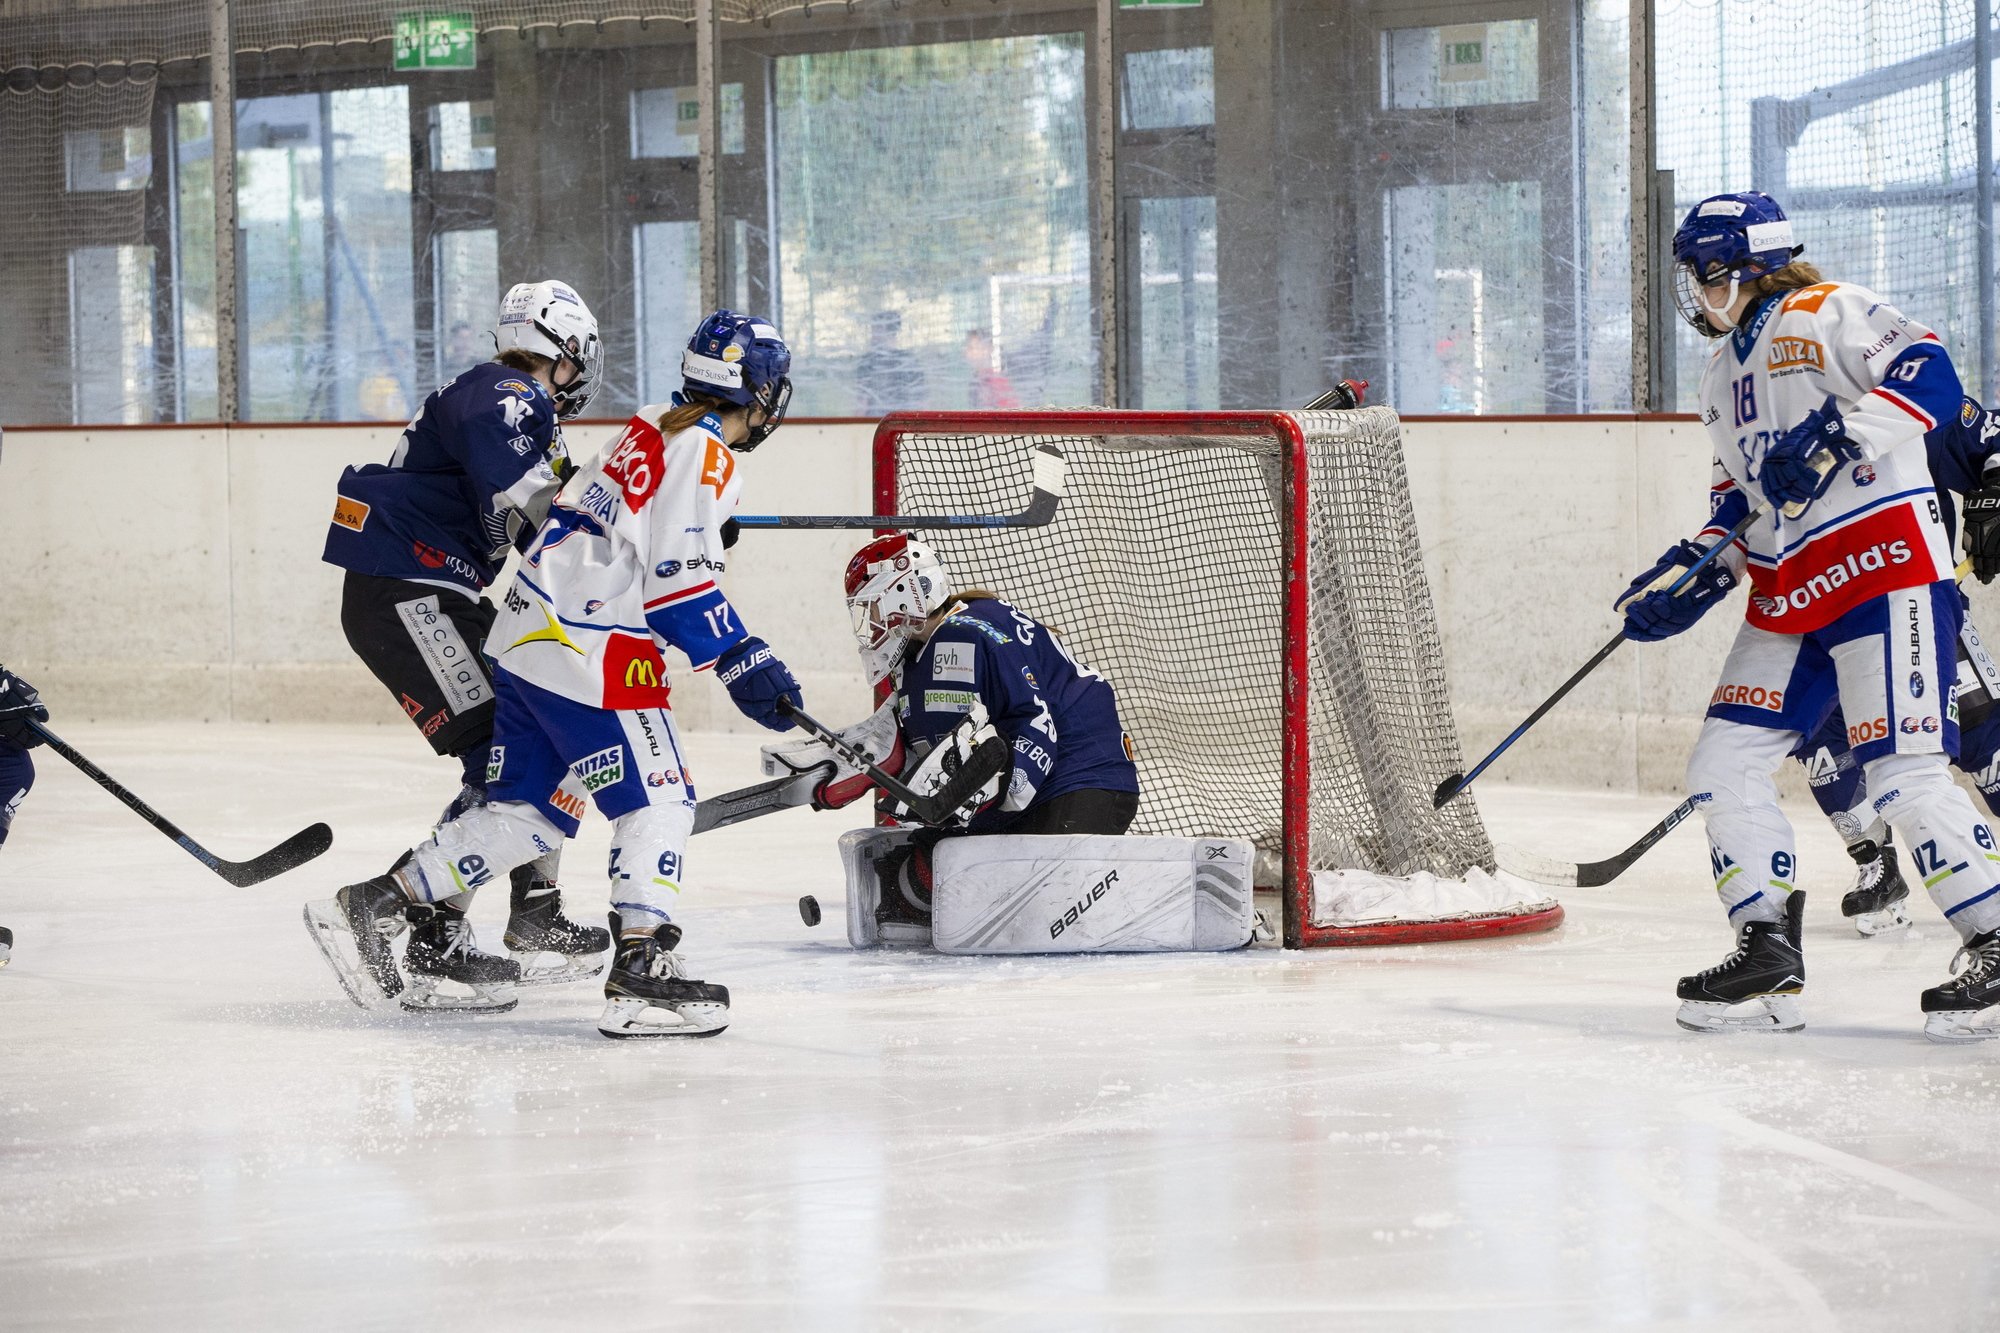 La finale entre la Neuchâtel Hockey Academy et les ZSC Lions s'est arrêtée dimanche dernier aux patinoire du Littoral.